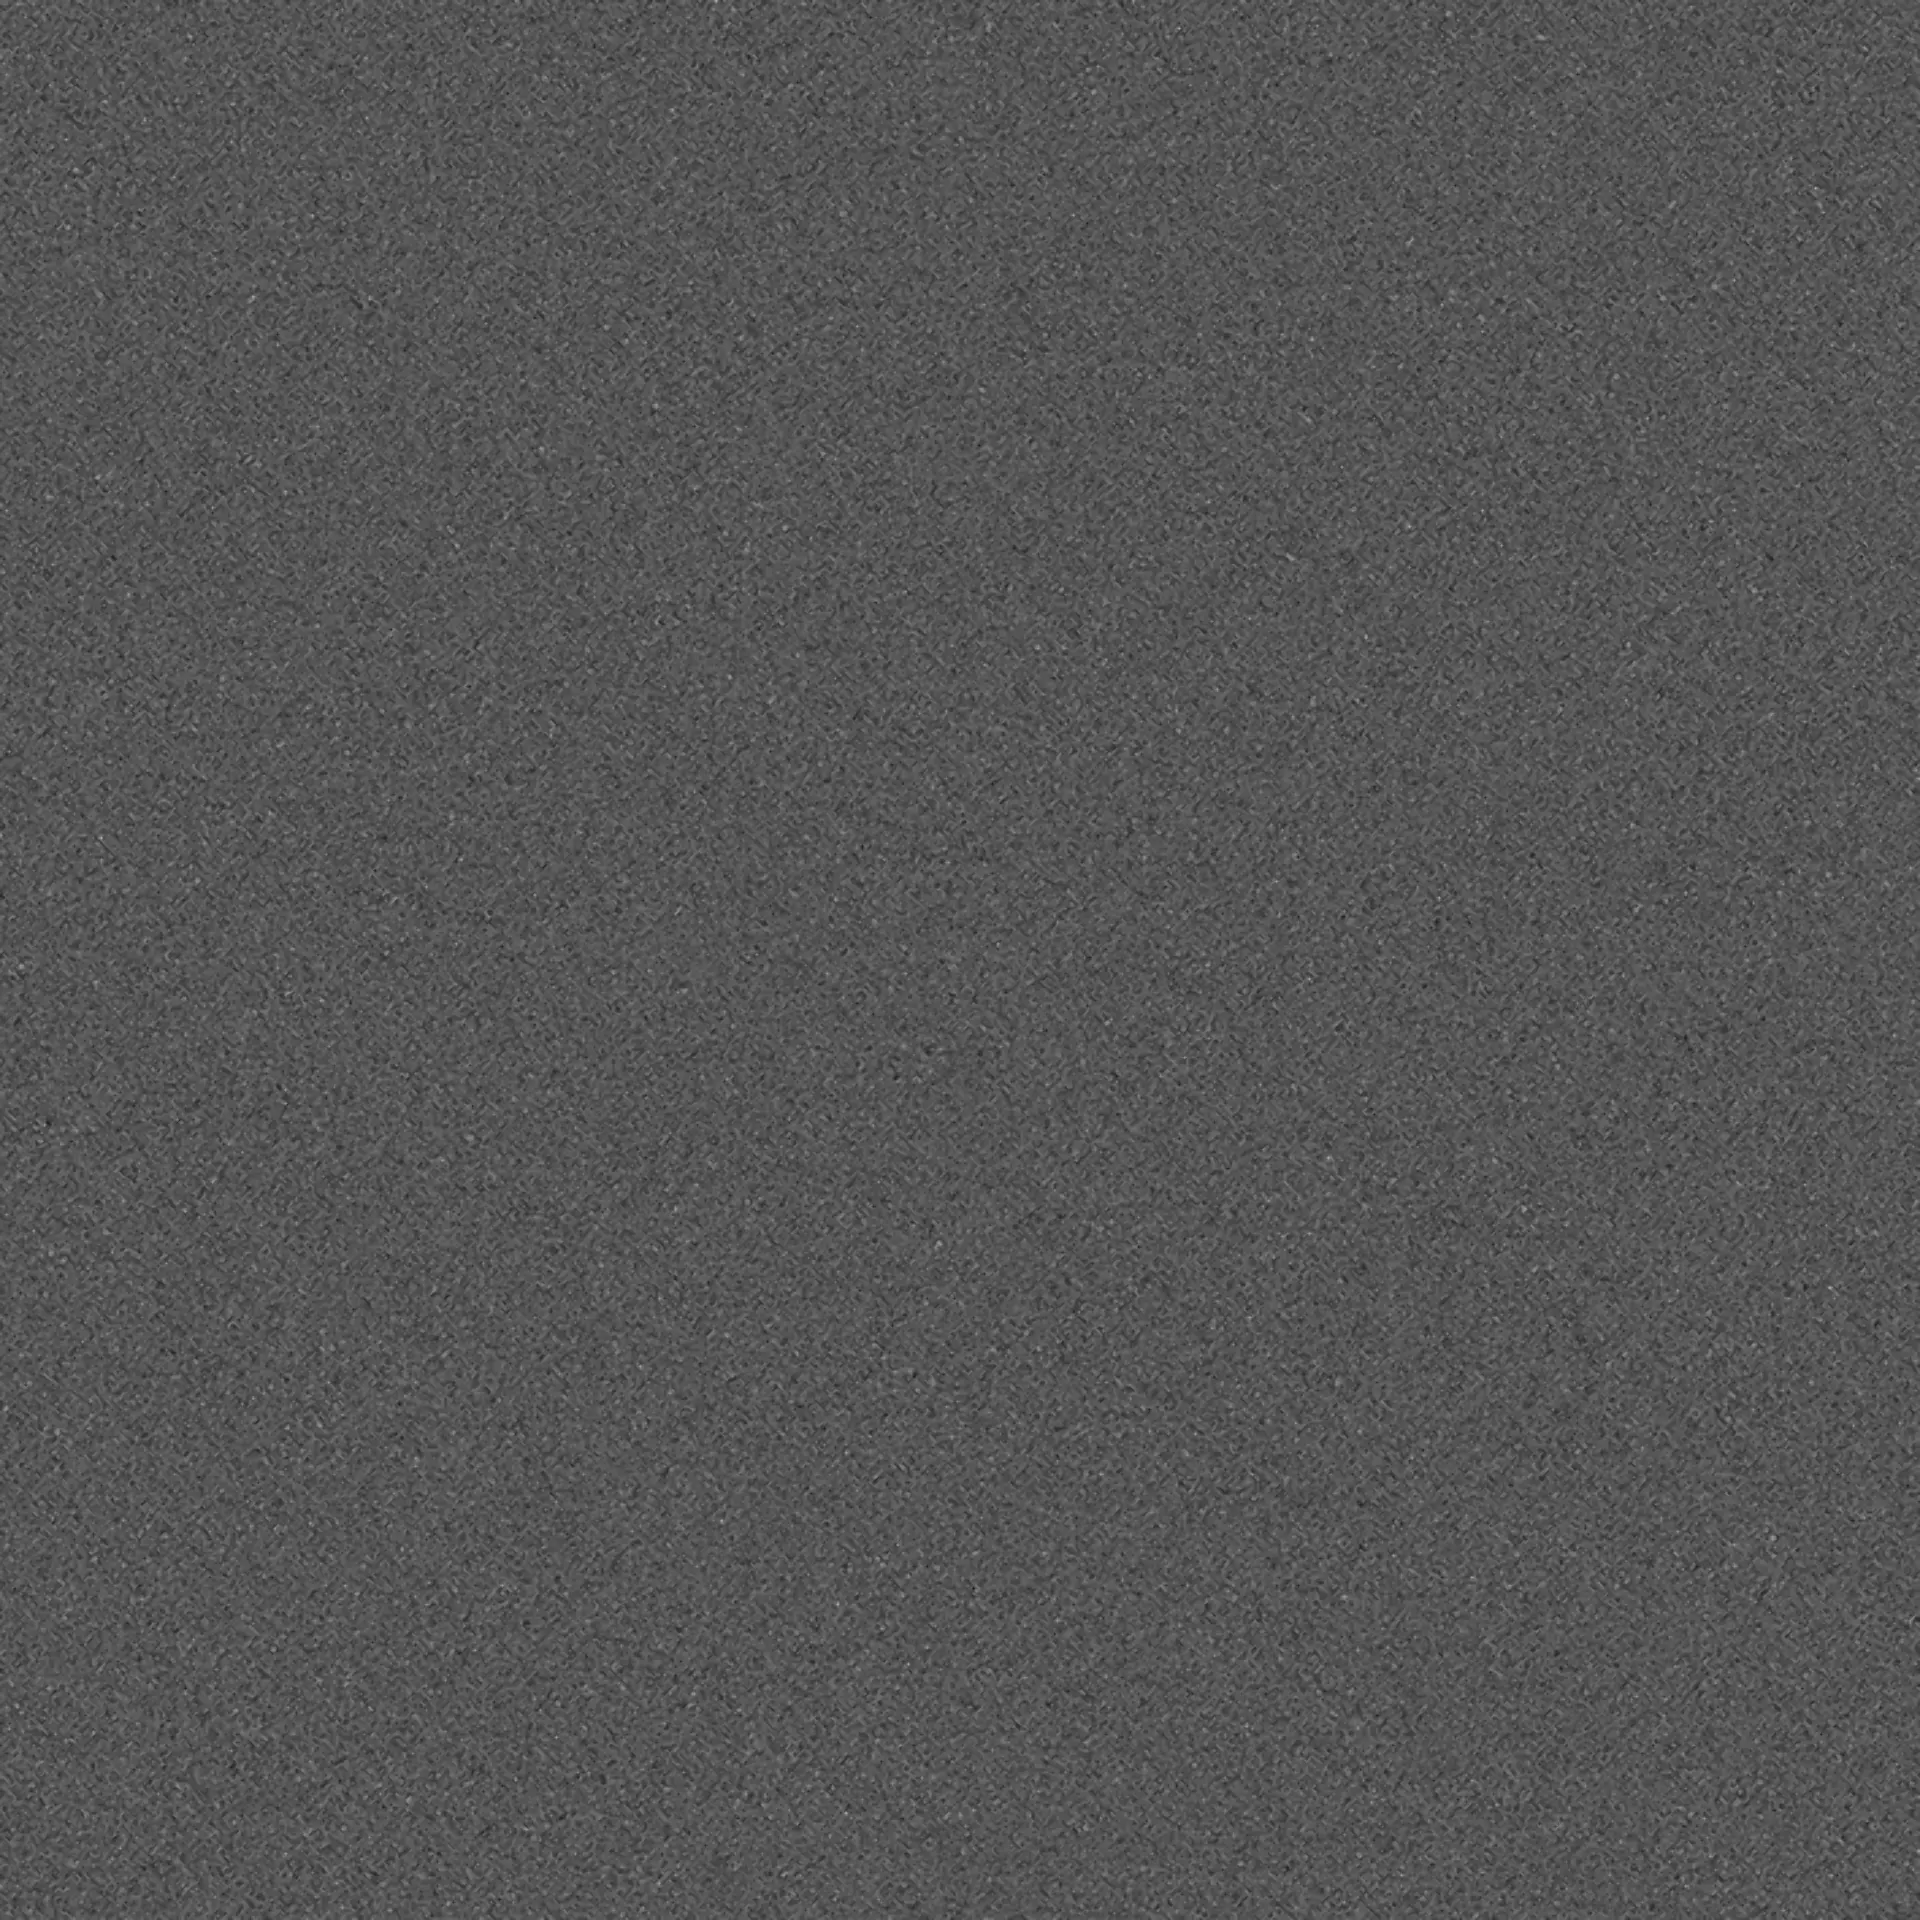 Wandfliese,Bodenfliese Villeroy & Boch Pure Line 2.0 Asphalt Grey Matt Asphalt Grey 2753-UL90 matt 60x60cm rektifiziert 12mm